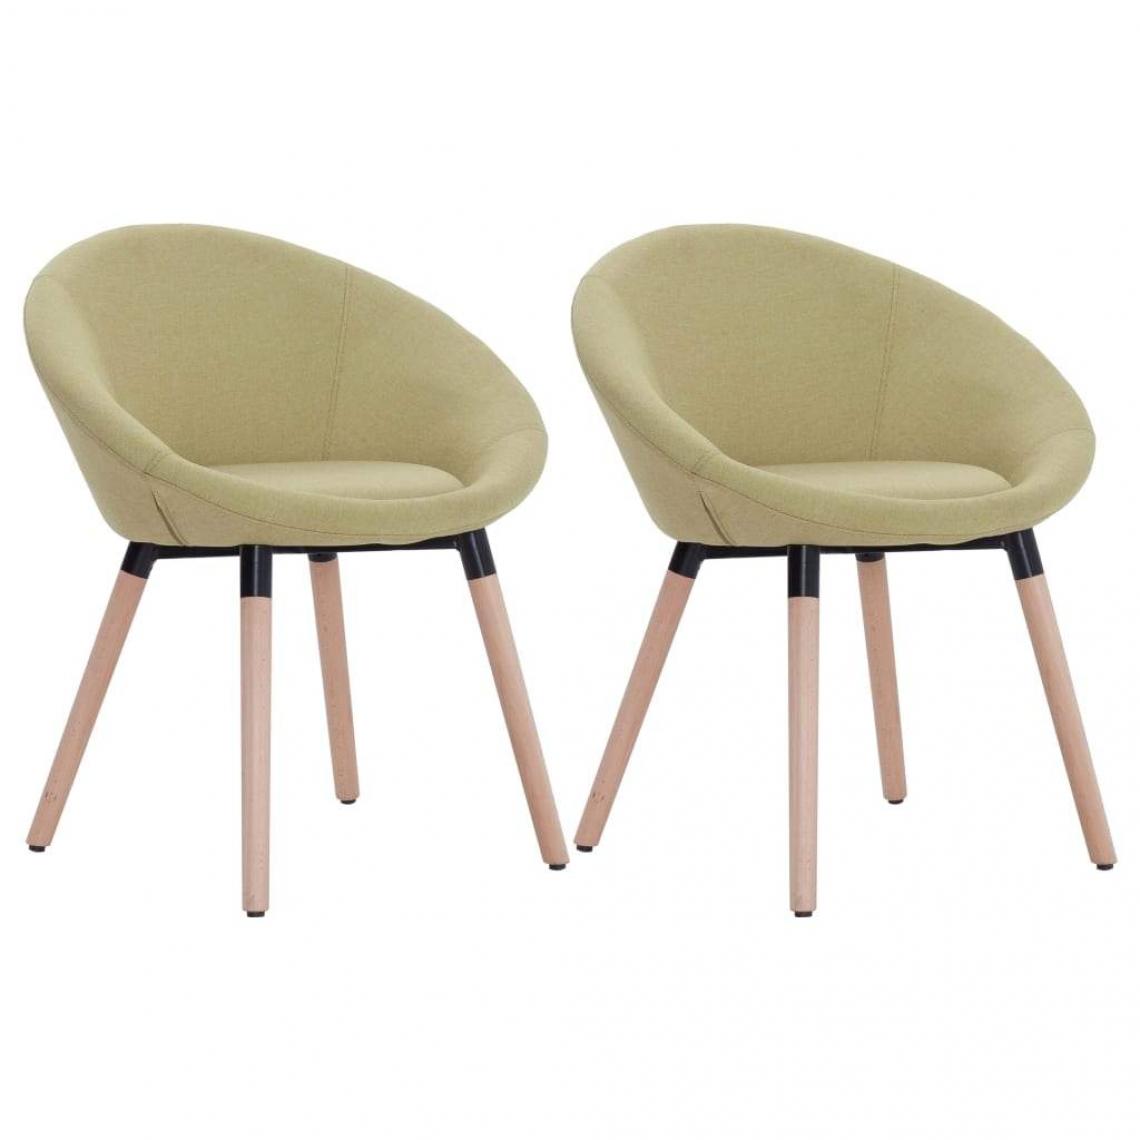 Decoshop26 - Lot de 2 chaises de salle à manger cuisine design contemporain tissu vert CDS021107 - Chaises